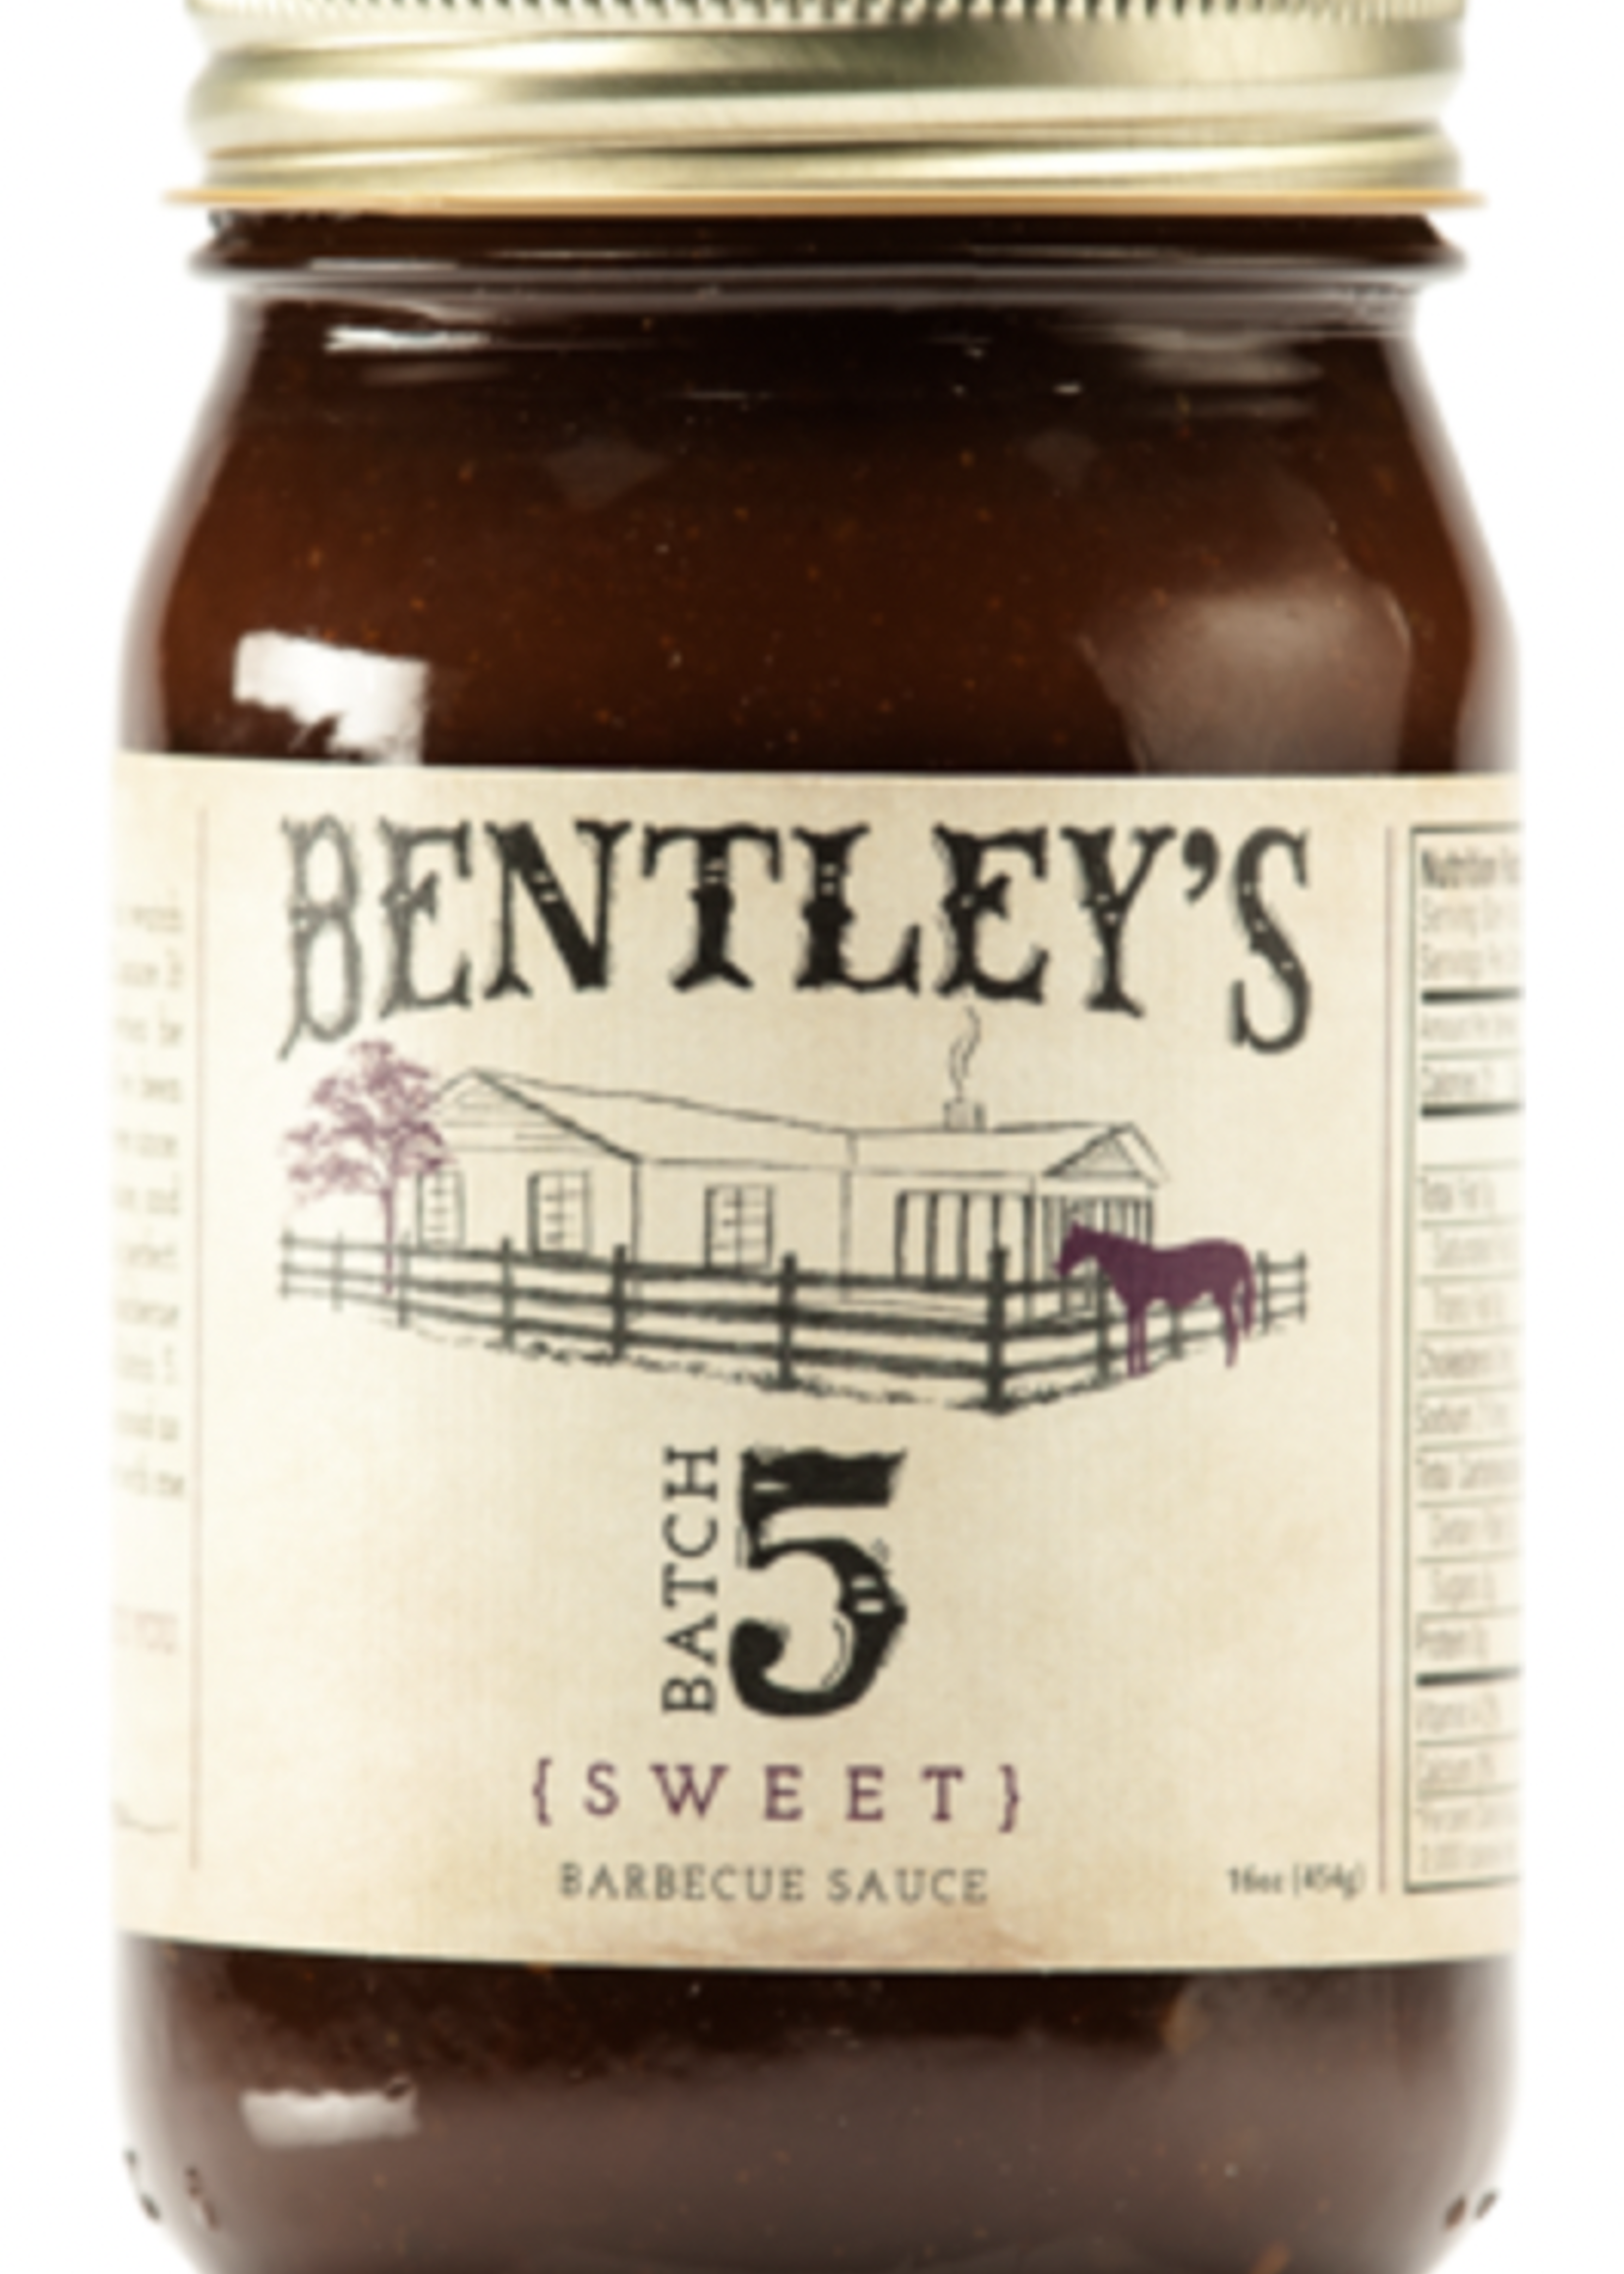 Bentley's Batch 5 Sweet BBQ Sauce